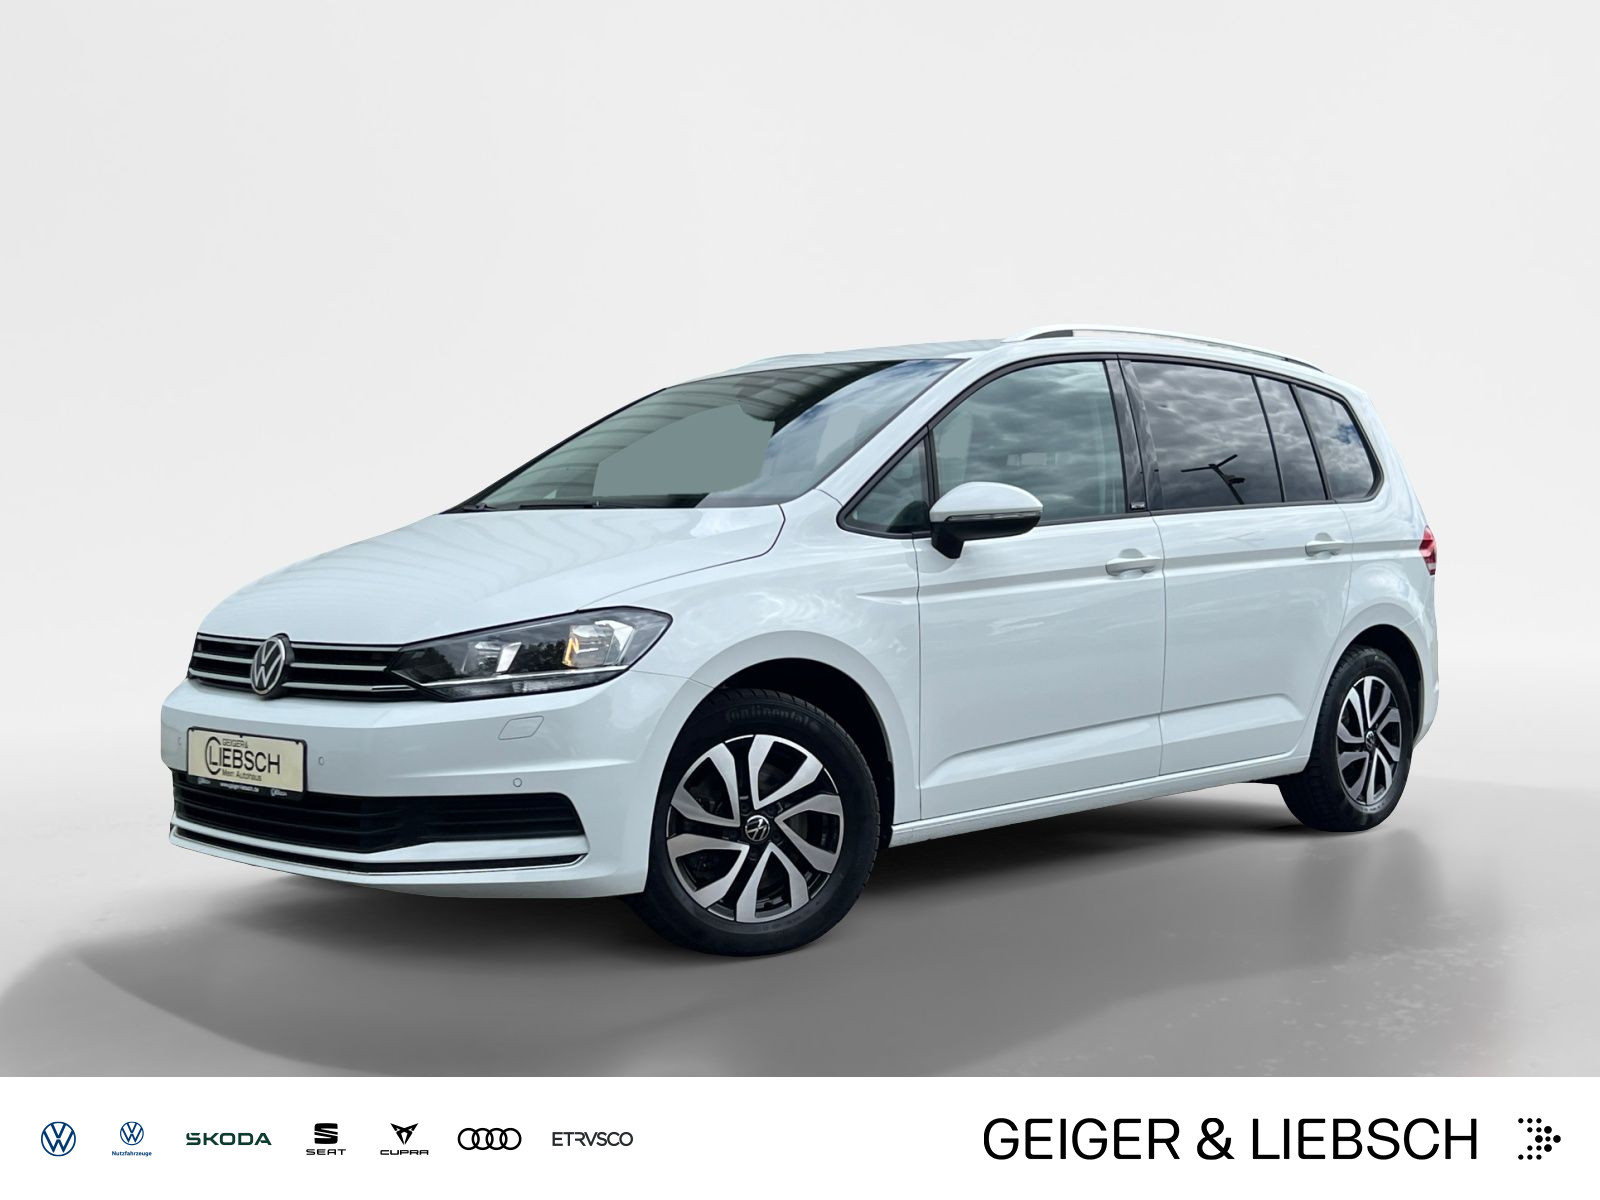 Volkswagen Touran 1.5 TSI ACTIVE DIGITAL